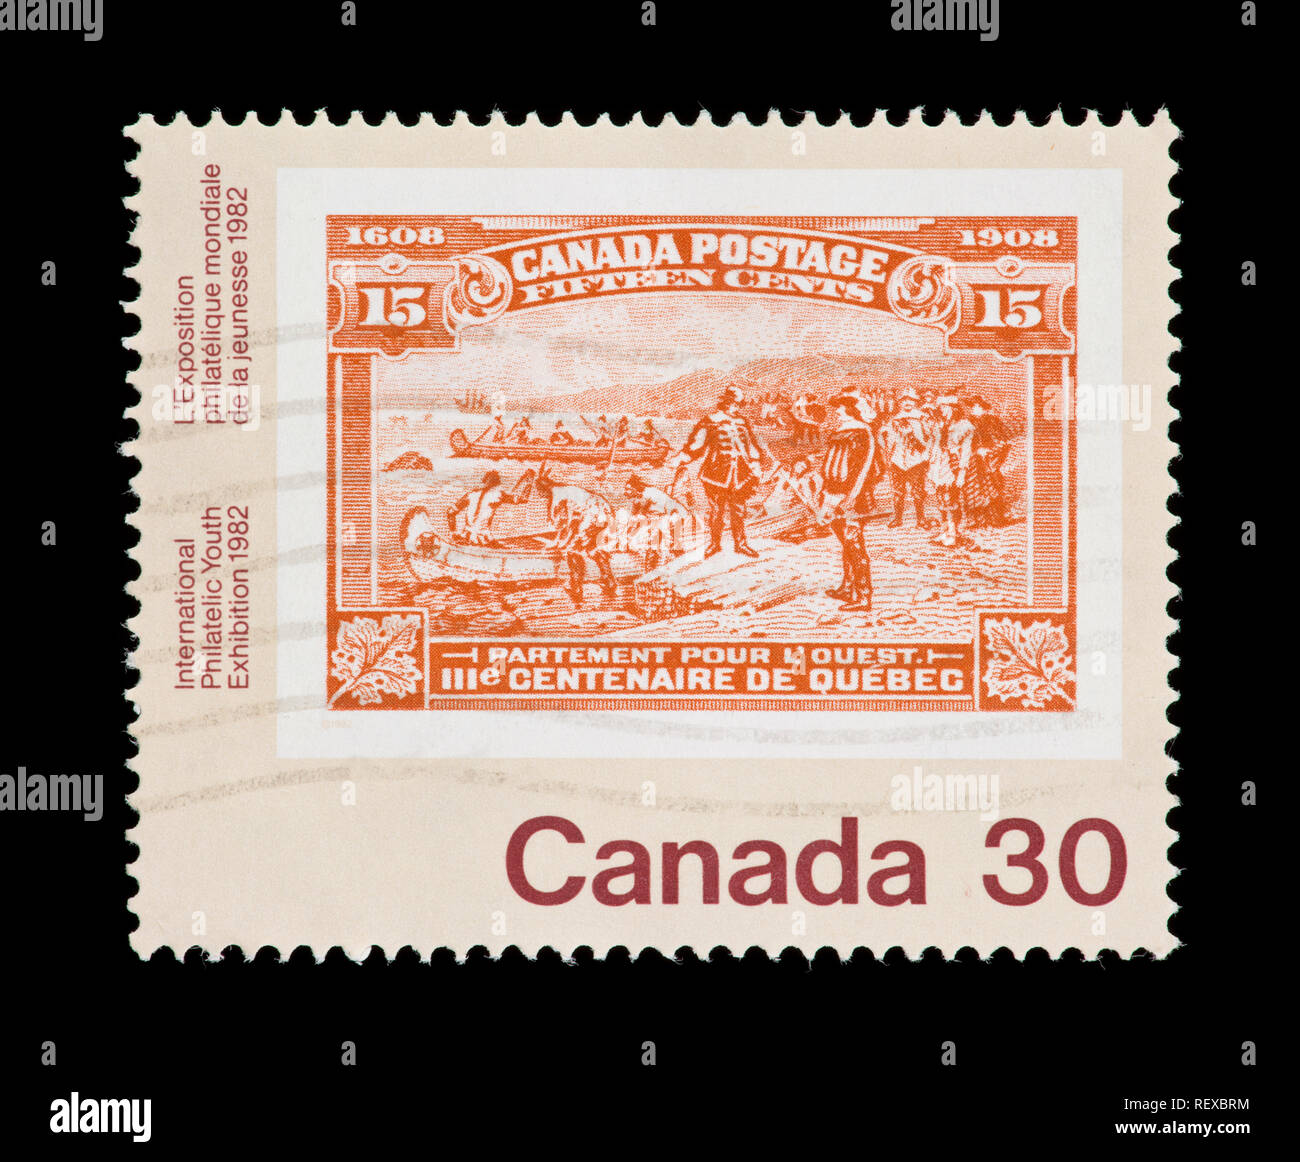 Timbre du Canada représentant un timbre canadien historique, émis pour la '91 Exposition philatélique internationale de la jeunesse à Toronto Banque D'Images